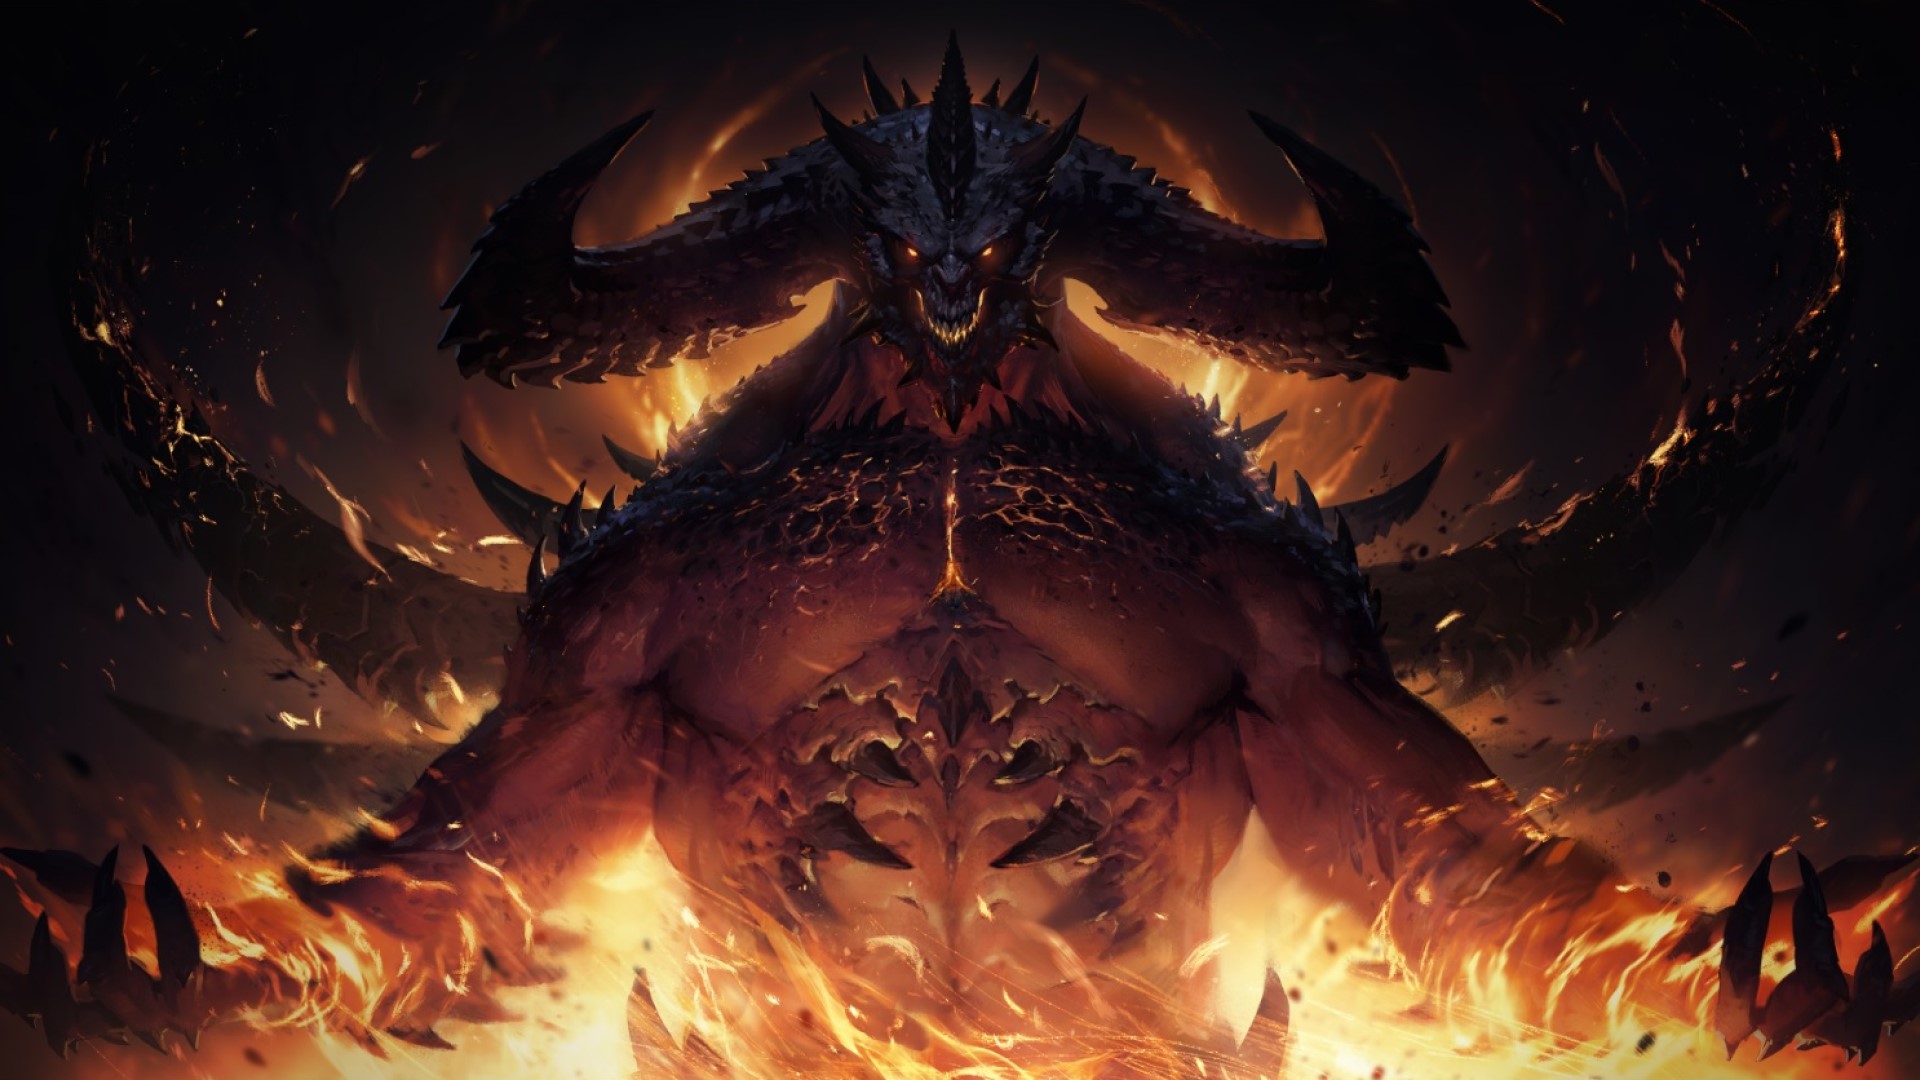 Blizzard Entertainment เผยสเปกความต้องการของ Diablo Immortal